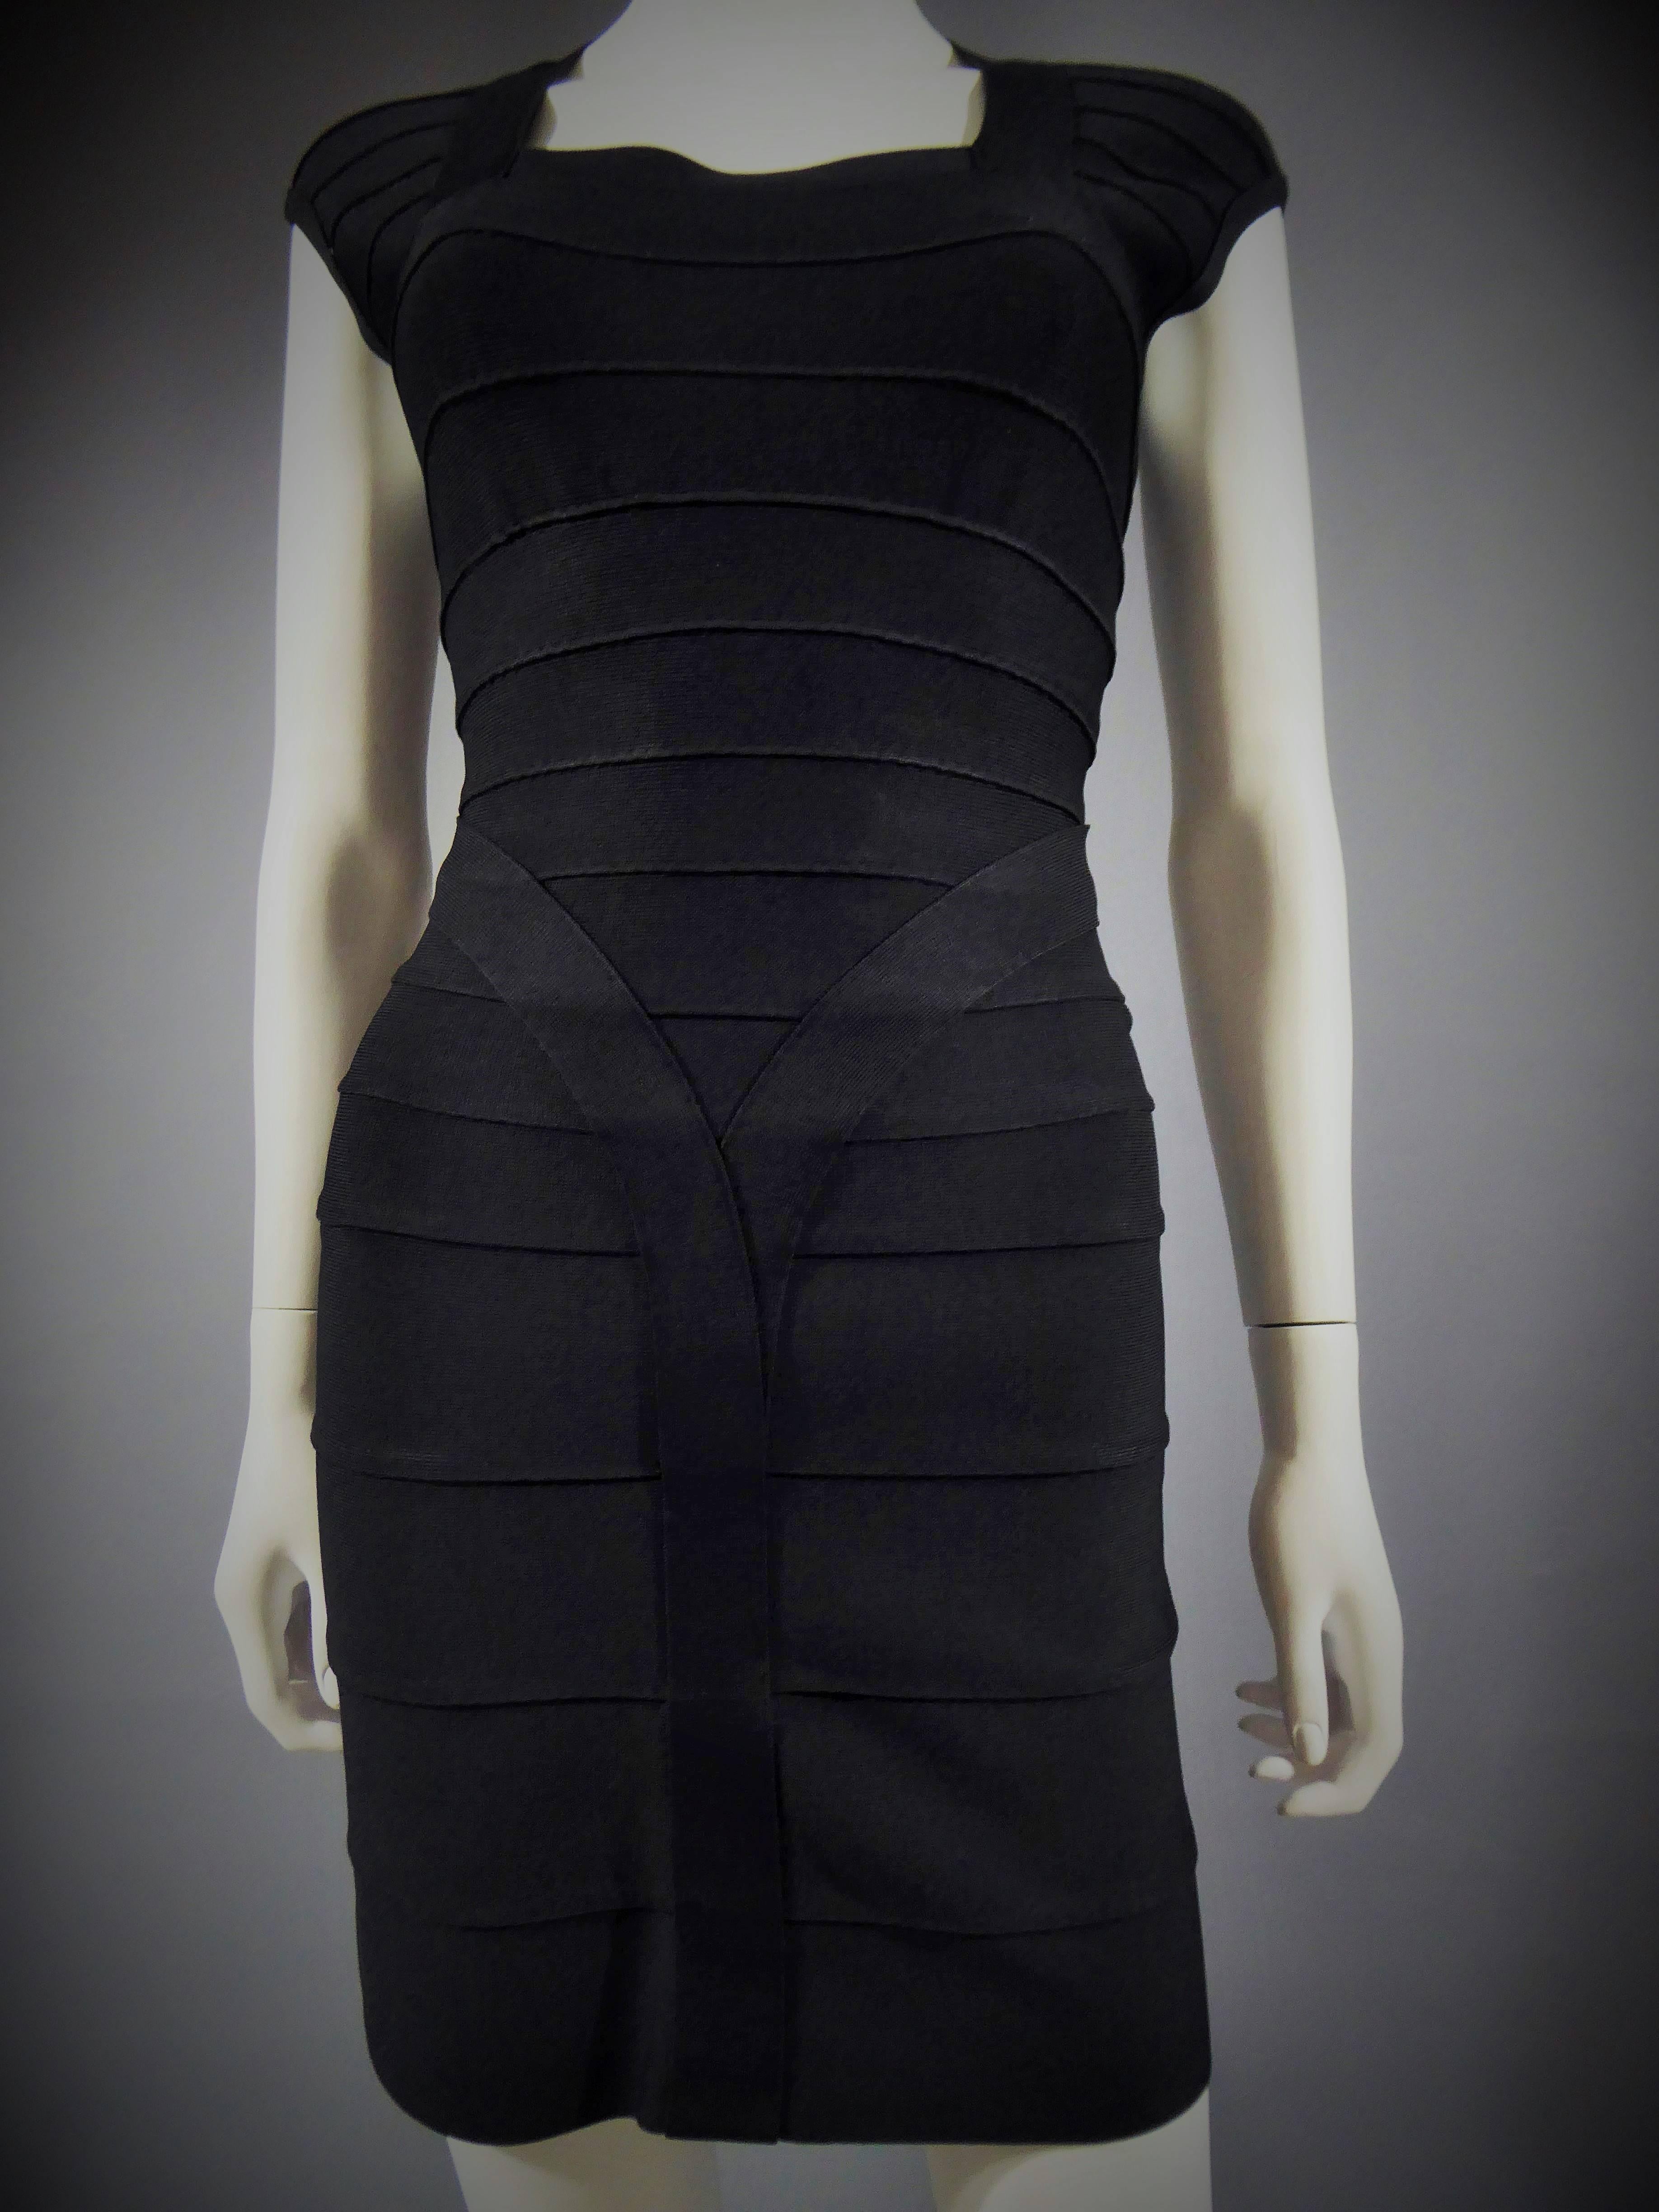 Circa 1995

France

Mini robe noire Hervé Léger. Robe bodycon à manches courtes réalisée à partir d'un assemblage de bandes de tissu extensible couramment utilisées dans le domaine de la lingerie. Col carré, taille marquée. Très bon état. Taille 36